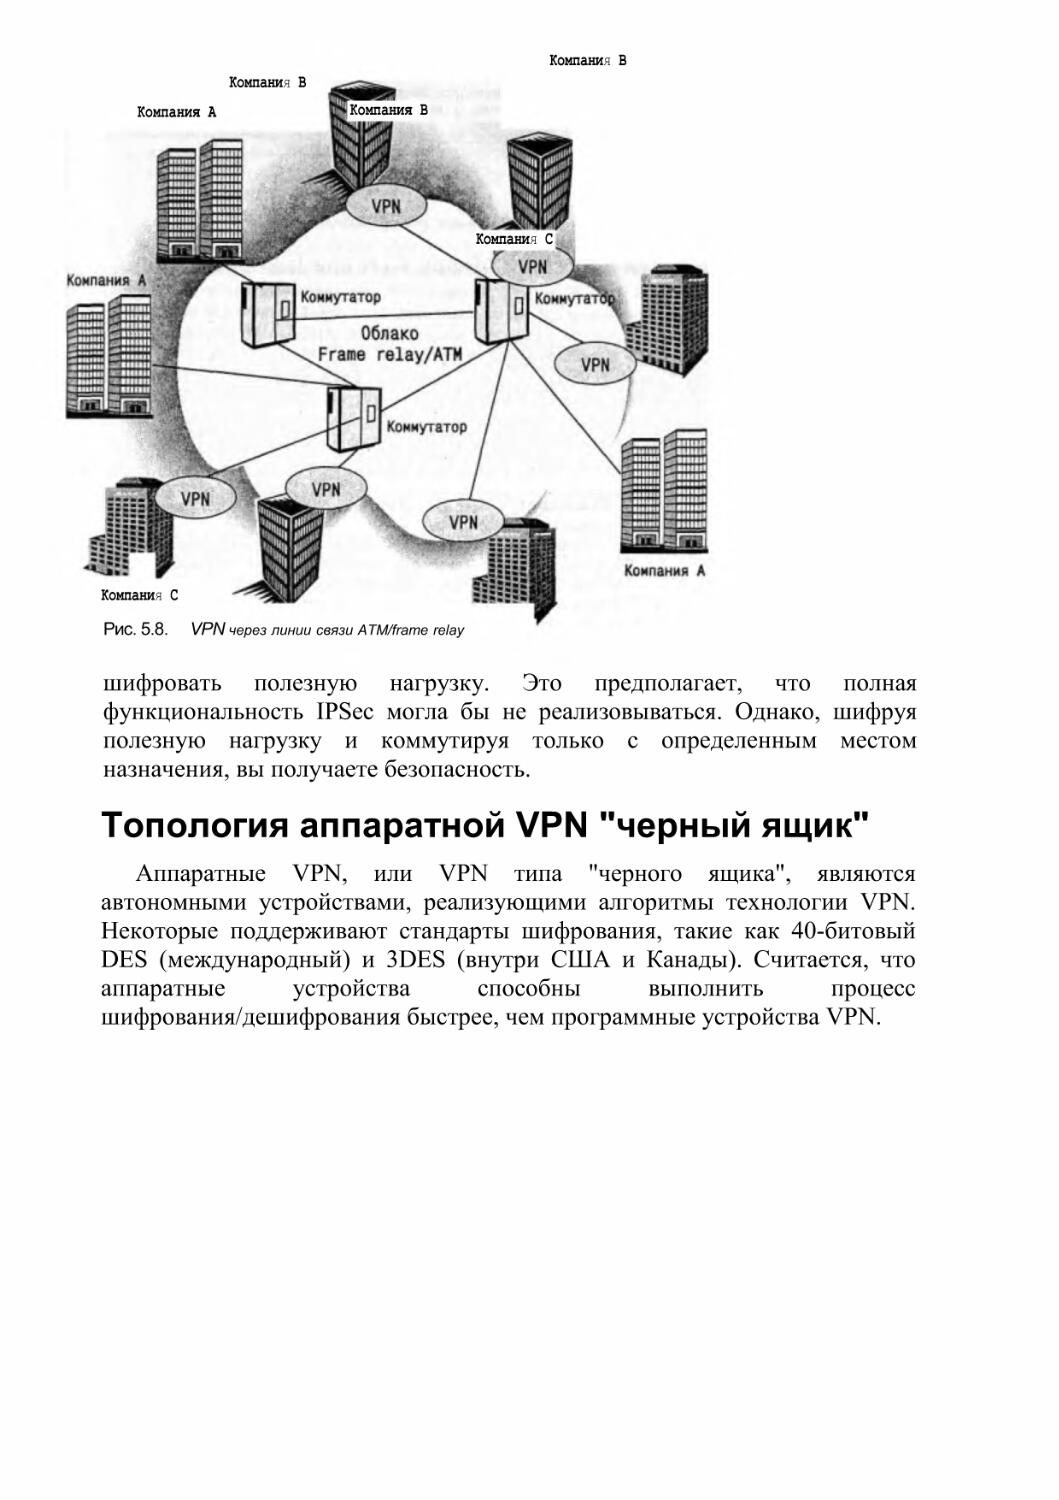 Топология аппаратной VPN \